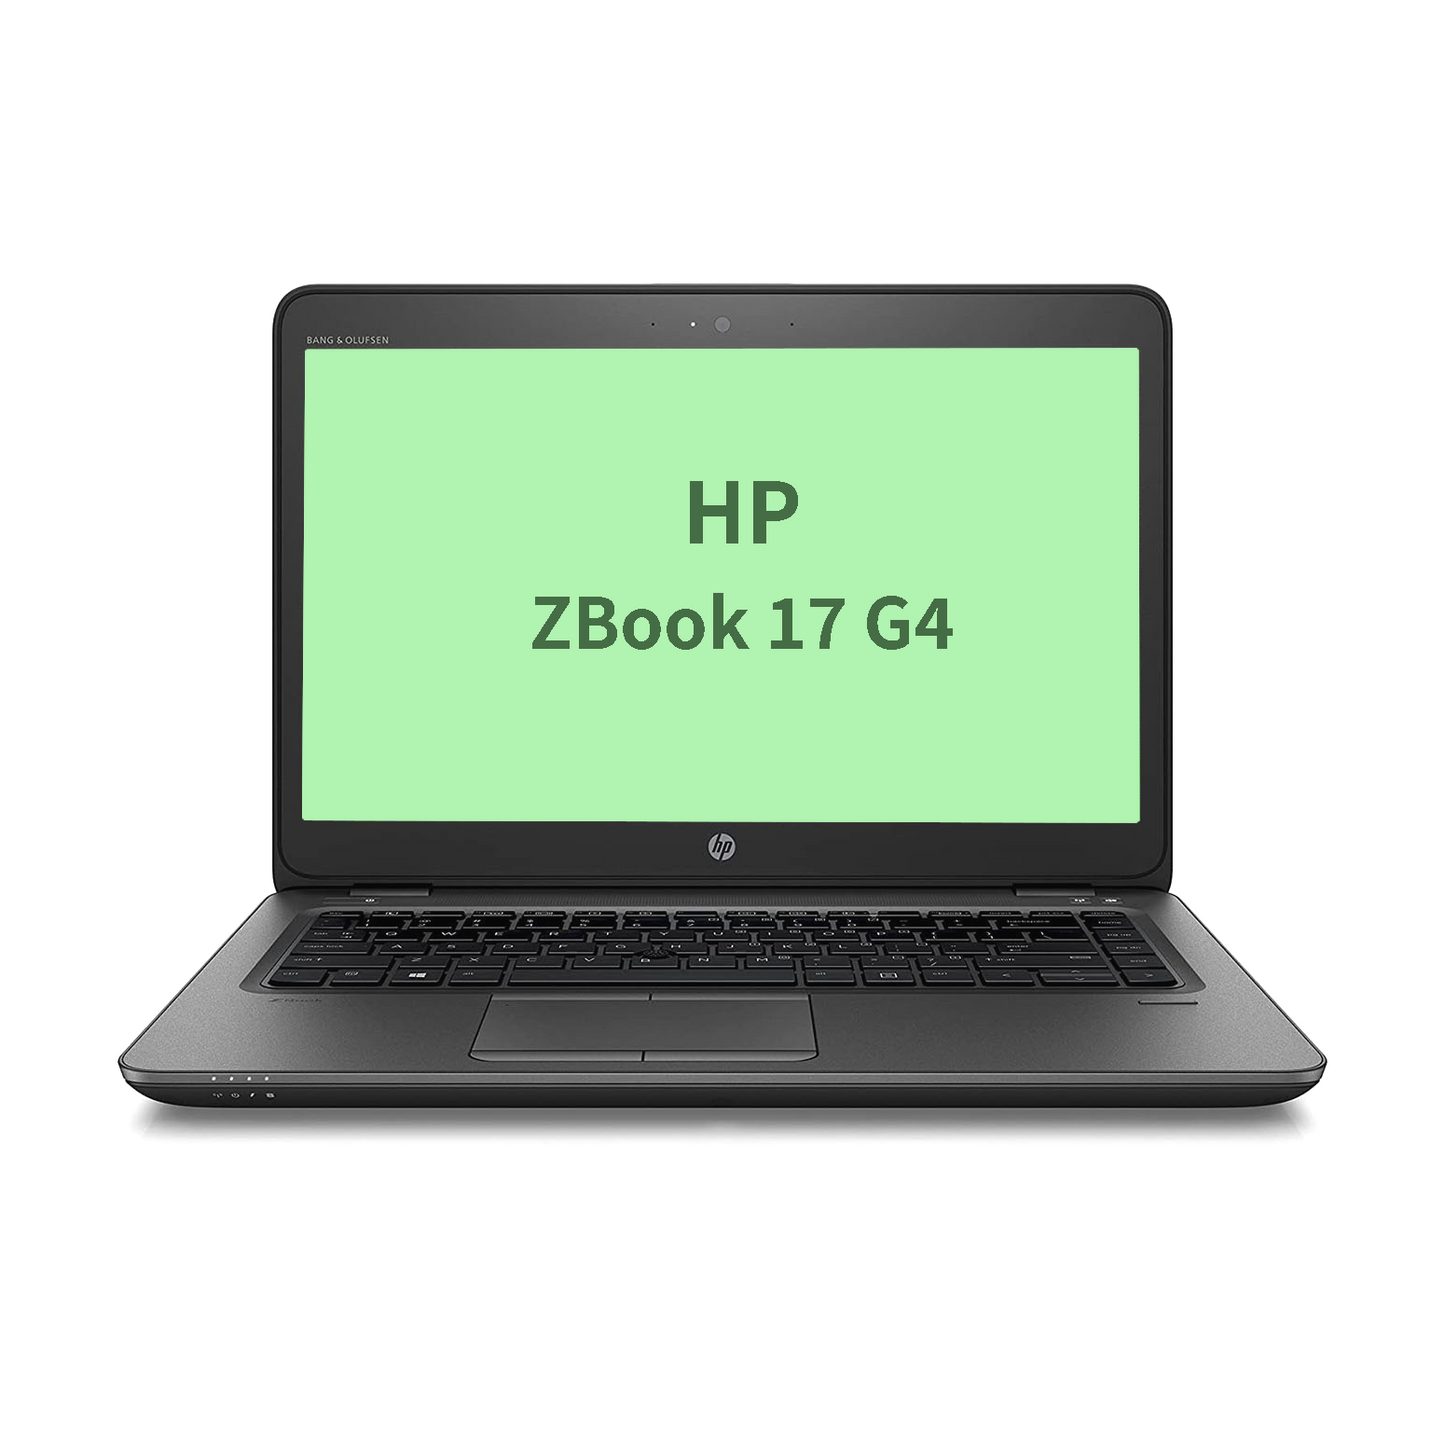 HP Zbook 17 G4